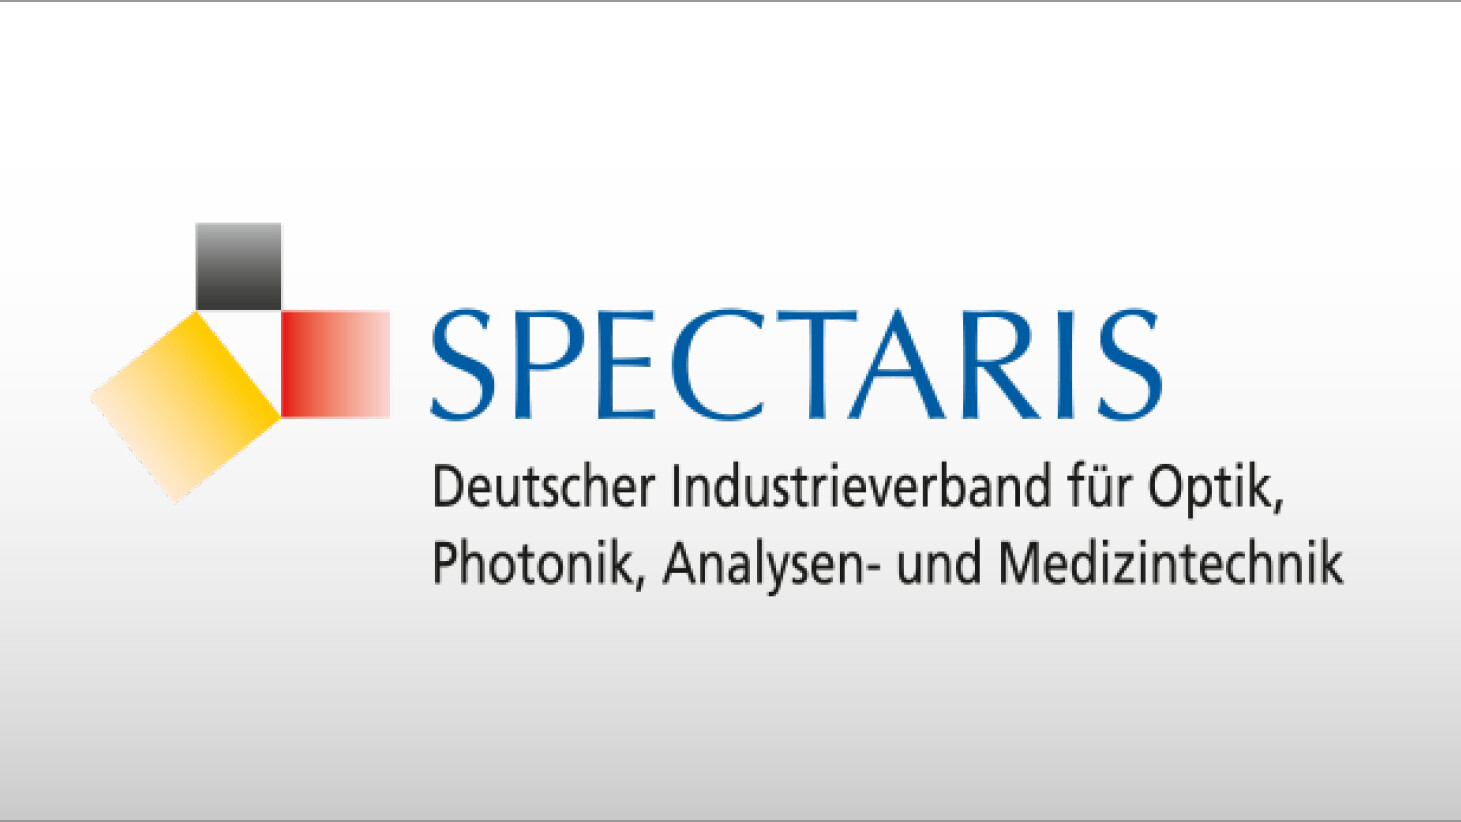 Optatec Internationale Fachmesse für optische Technologien, Komponenten und Systeme Optatec Special SPECTARIS WEB 1920x822 uai